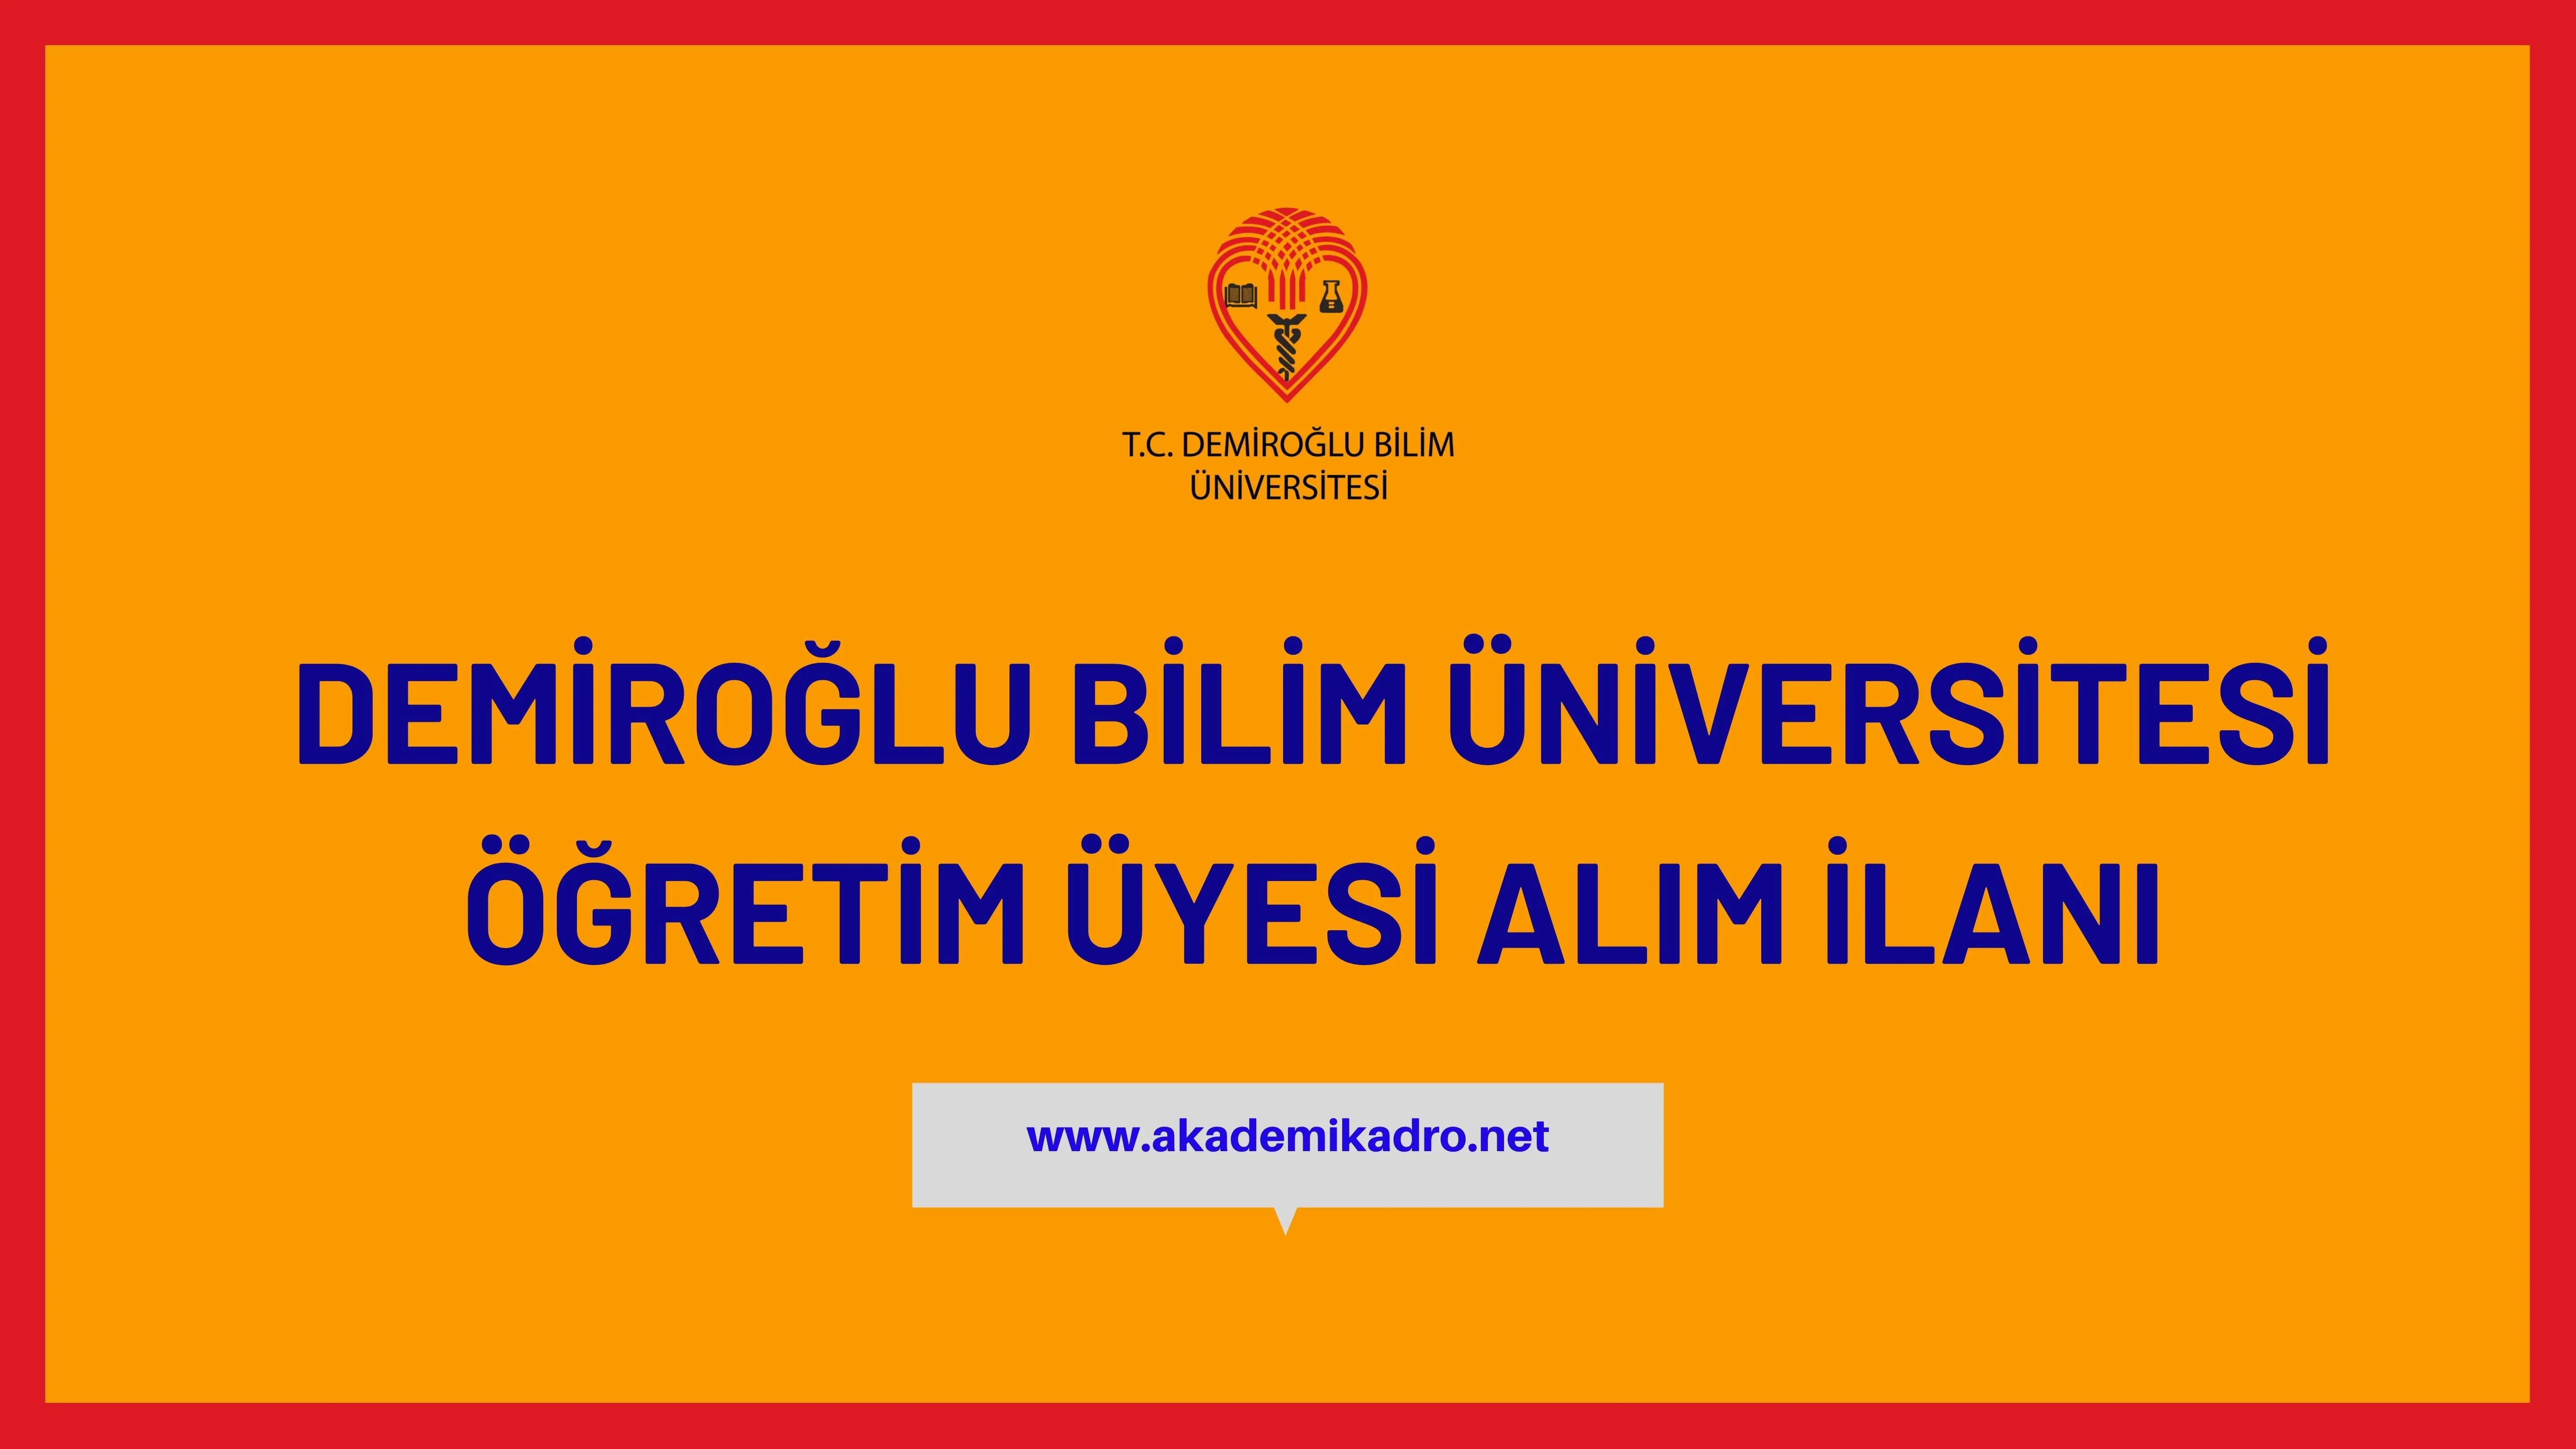 Demiroğlu Bilim Üniversitesi 7 akademik personel alacak.